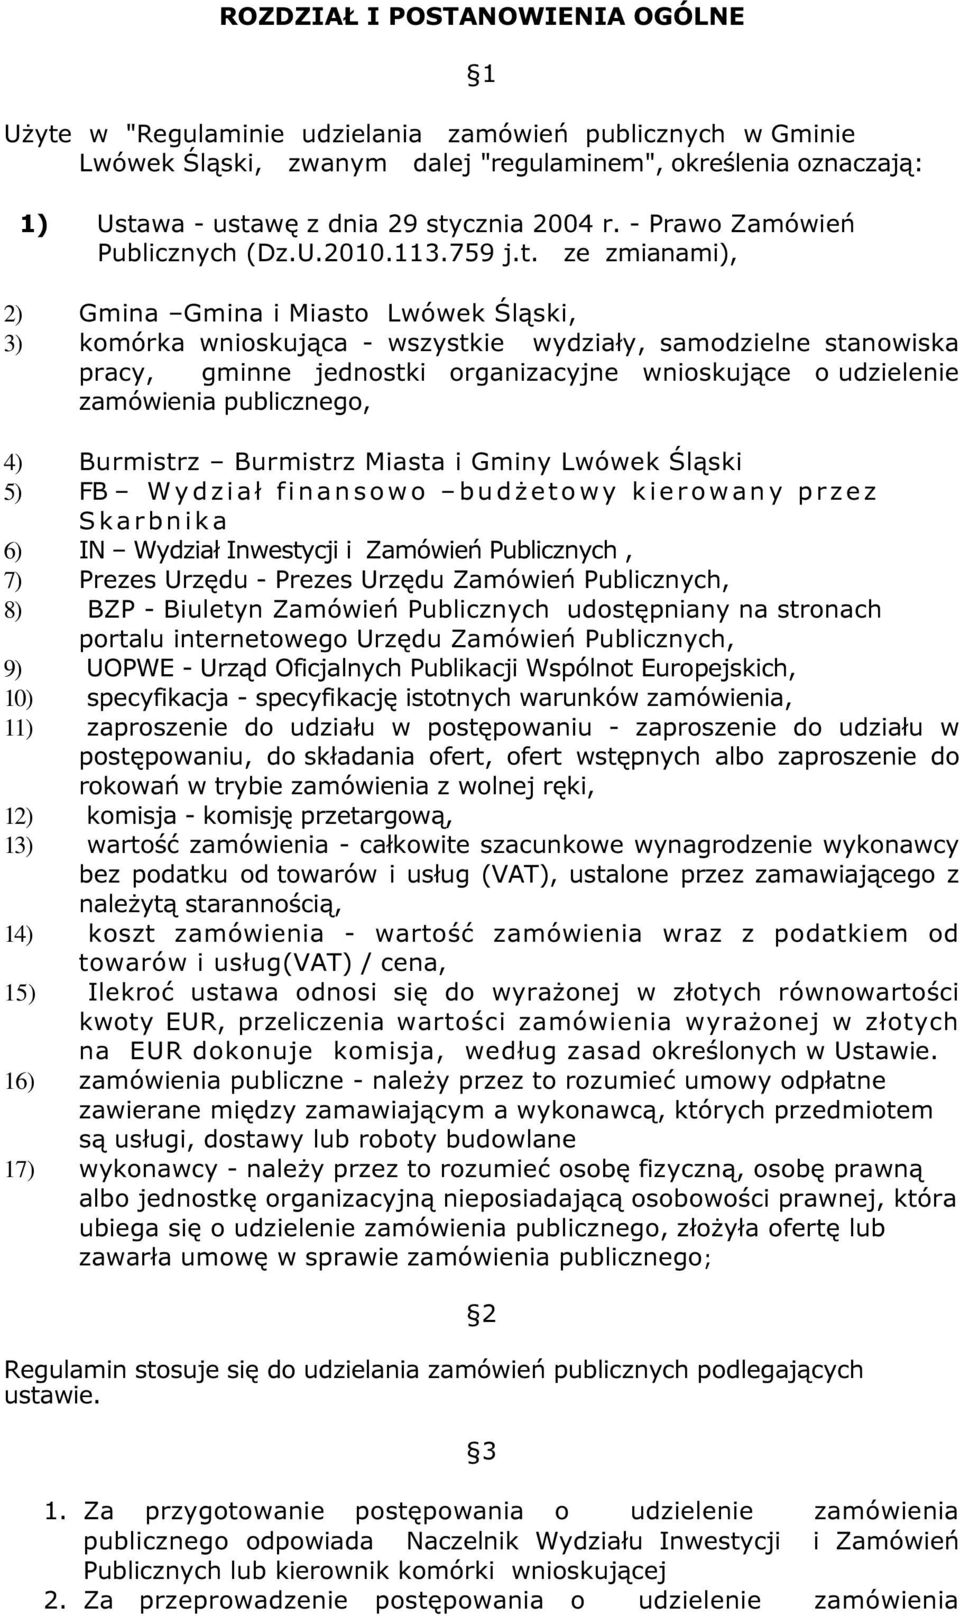 ze zmianami), 2) Gmina Gmina i Miasto Lwówek Śląski, 3) komórka wnioskująca - wszystkie wydziały, samodzielne stanowiska pracy, gminne jednostki organizacyjne wnioskujące o udzielenie zamówienia